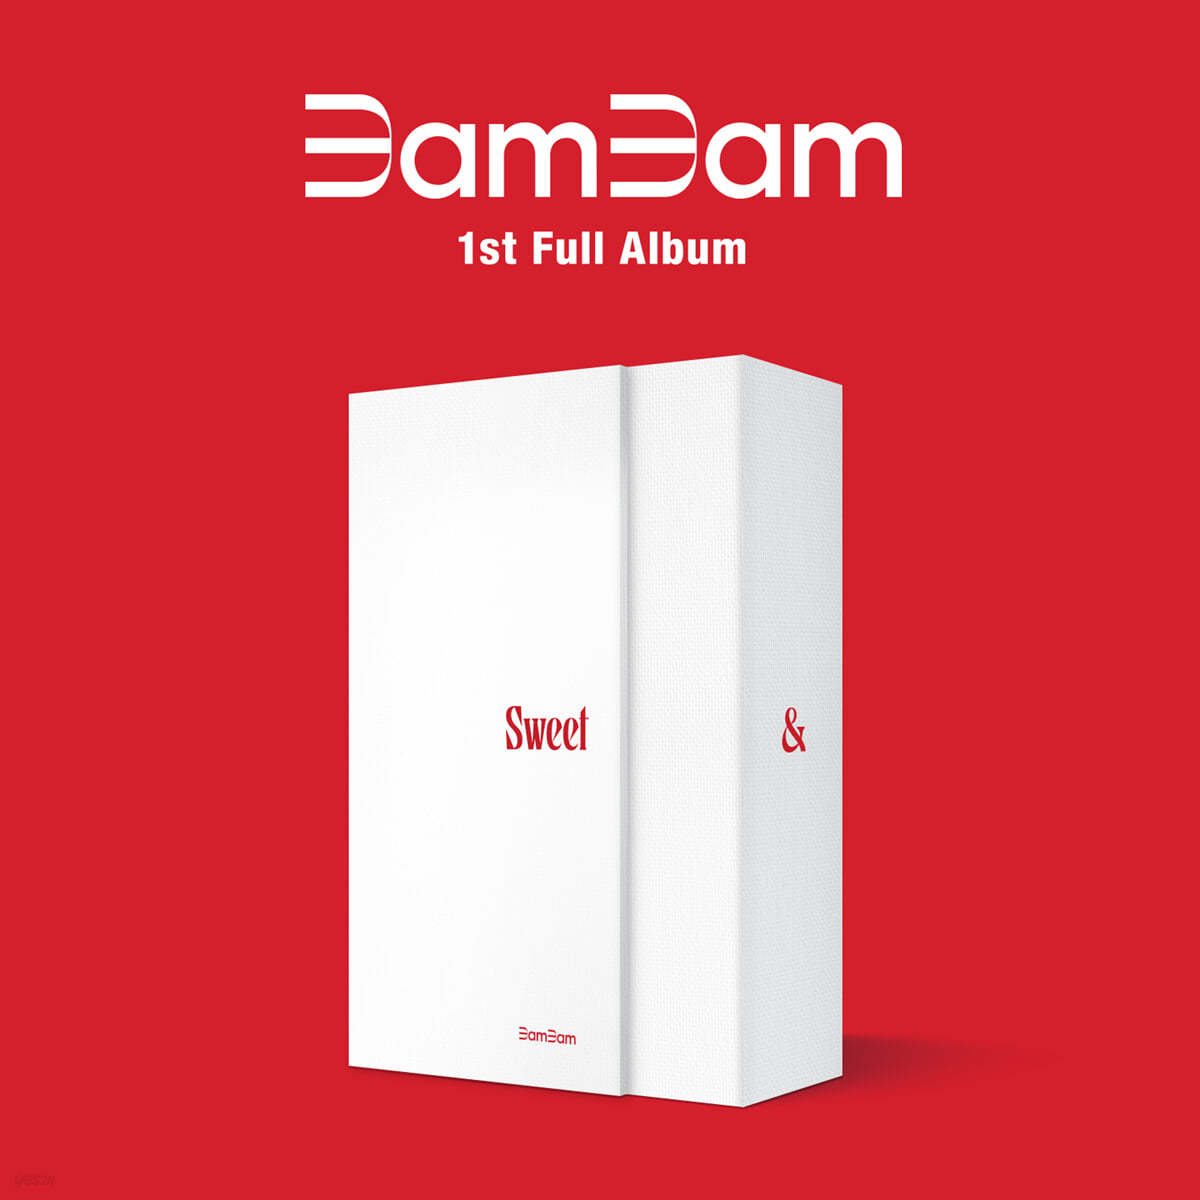 뱀뱀 (BamBam) 1집 - Sour & Sweet [Sweet ver.]